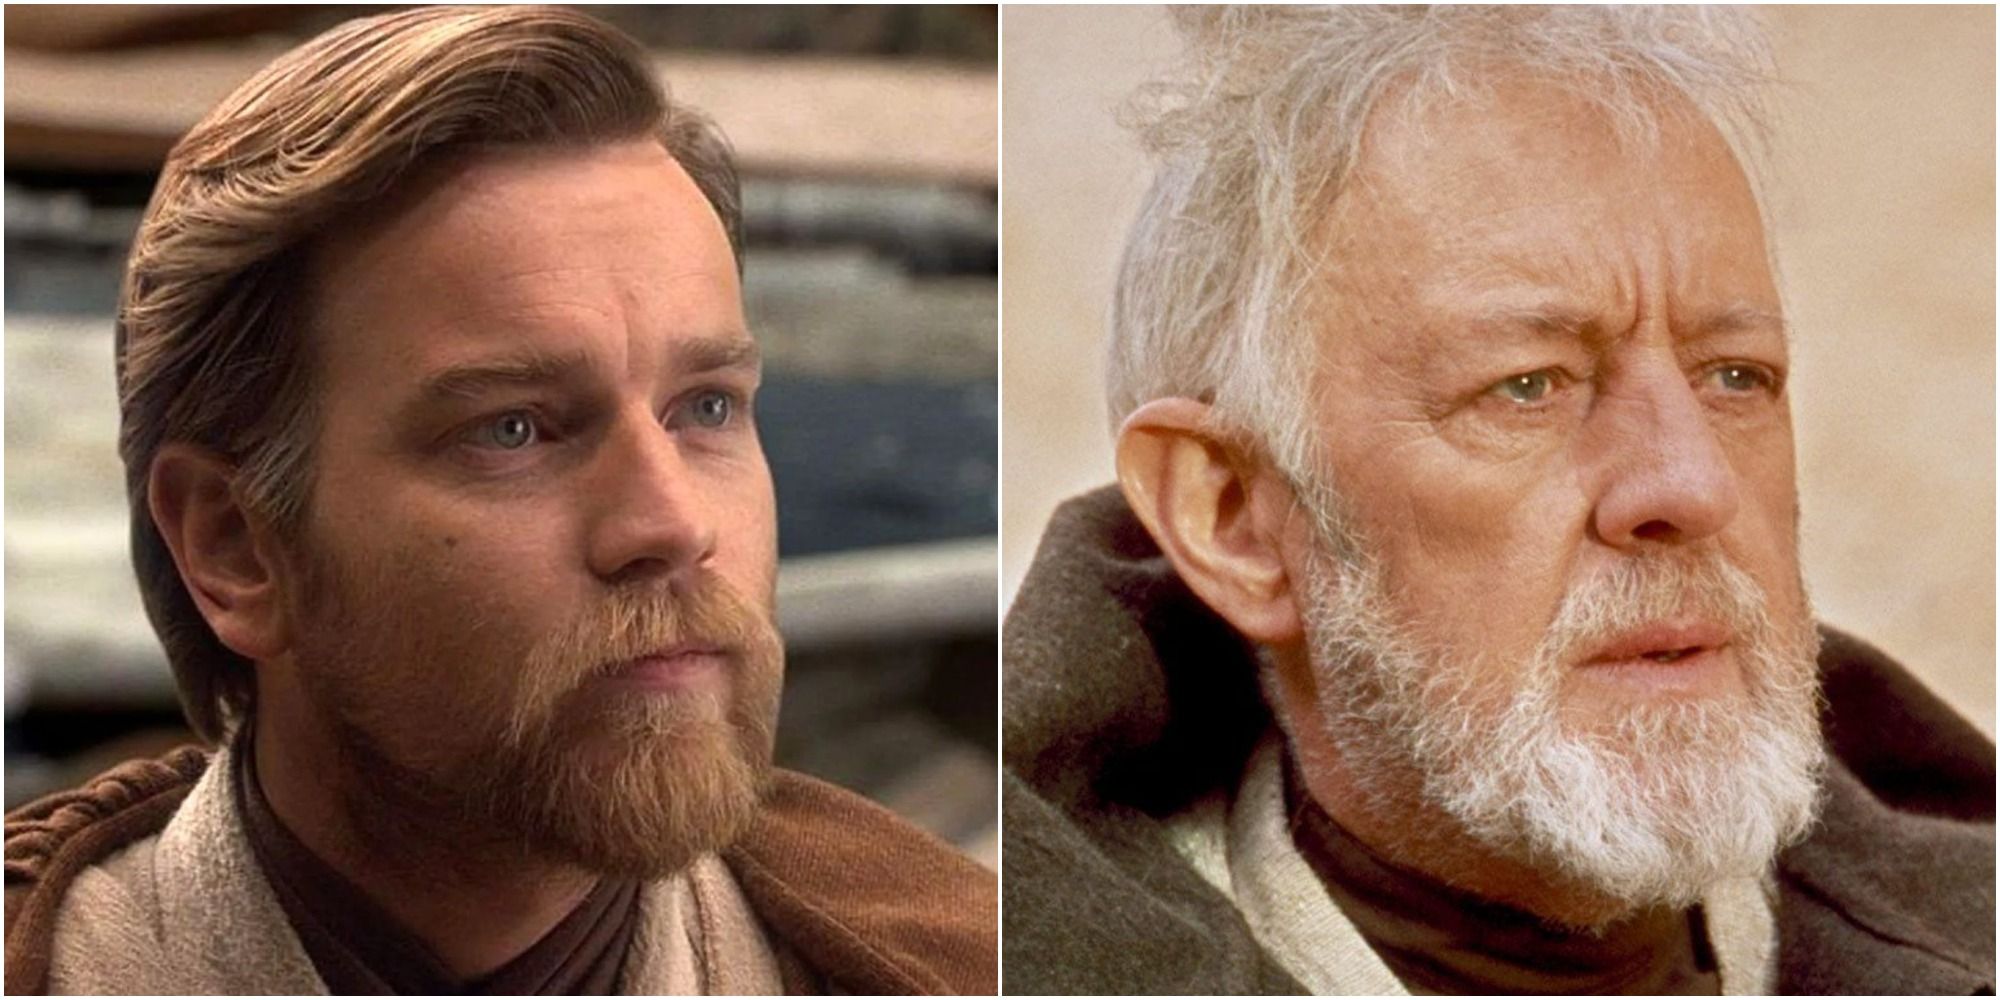 Звездные войны: лучшие цитаты Obi-Wan Kenobi